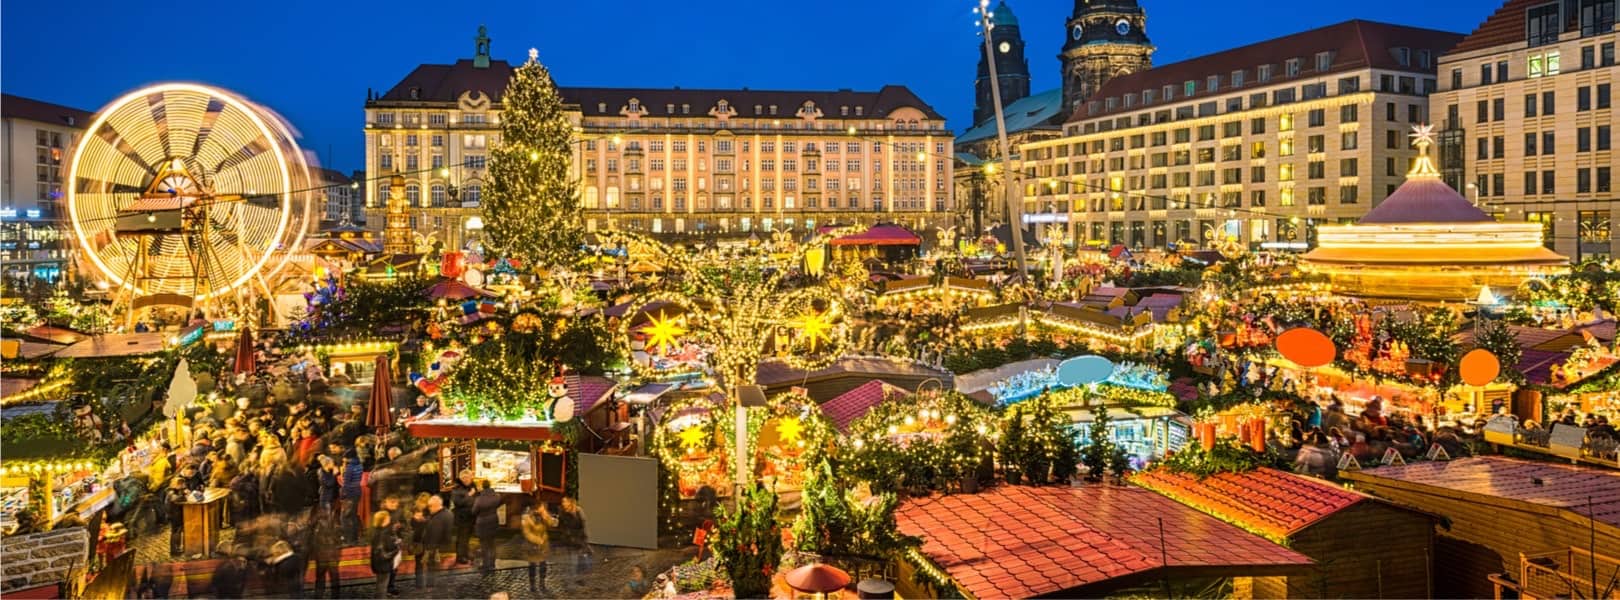 Blick auf den Dresdener Weihnachtsmarkt